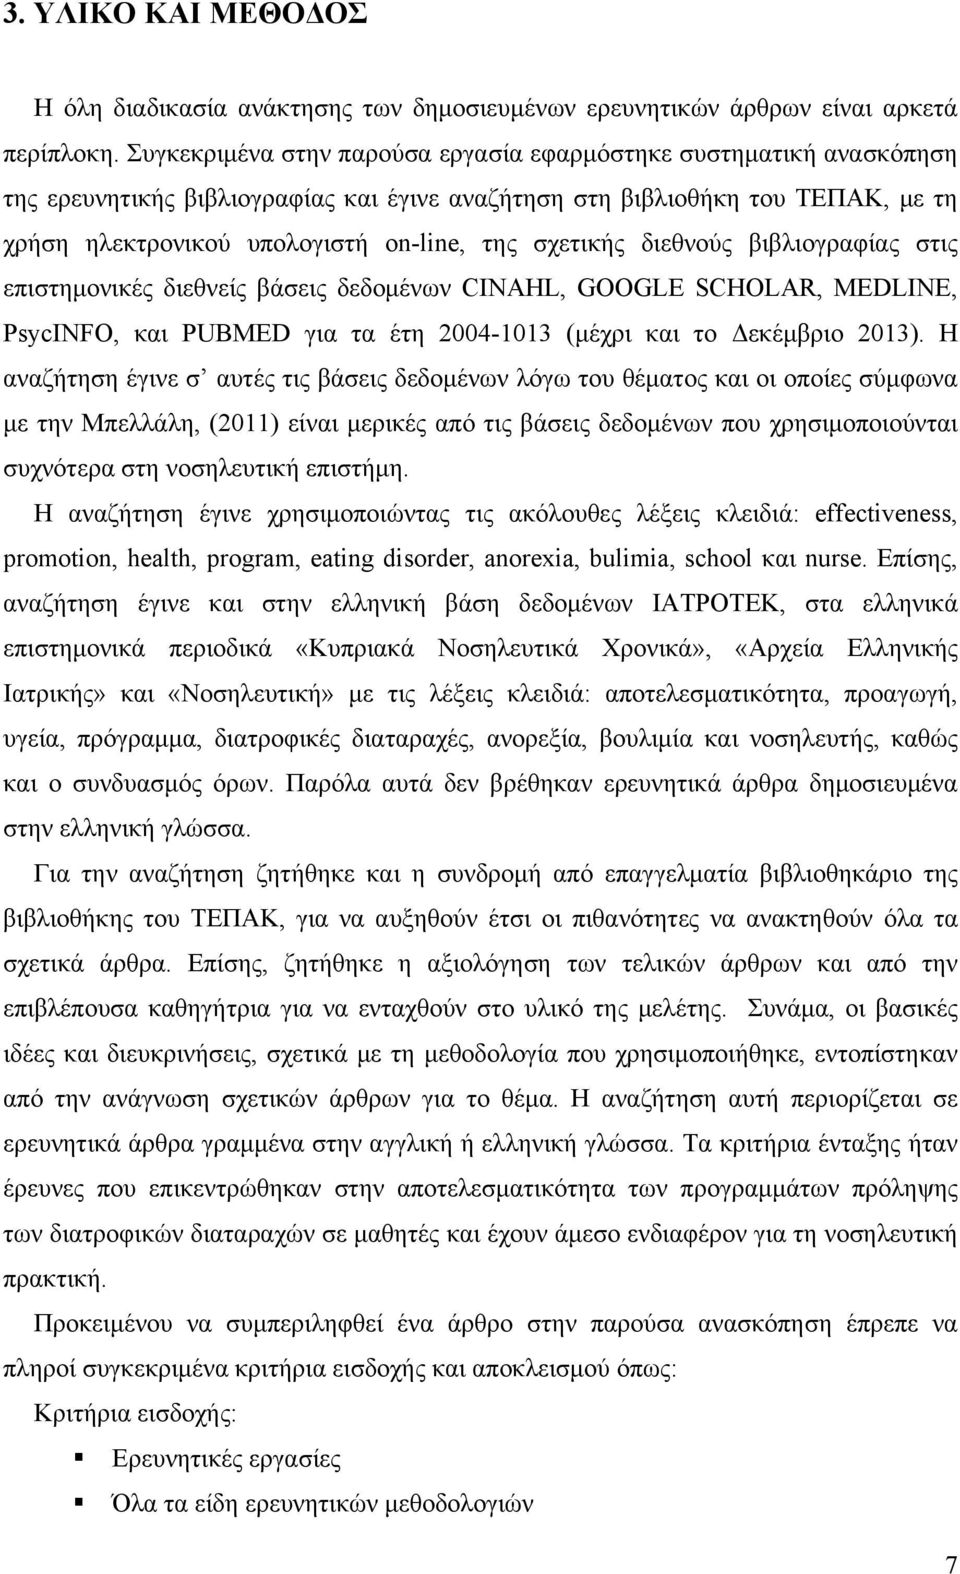 σχετικής διεθνούς βιβλιογραφίας στις επιστημονικές διεθνείς βάσεις δεδομένων CINAHL, GOOGLE SCHOLAR, MEDLINE, PsycINFO, και PUBMED για τα έτη 2004-1013 (μέχρι και το Δεκέμβριο 2013).